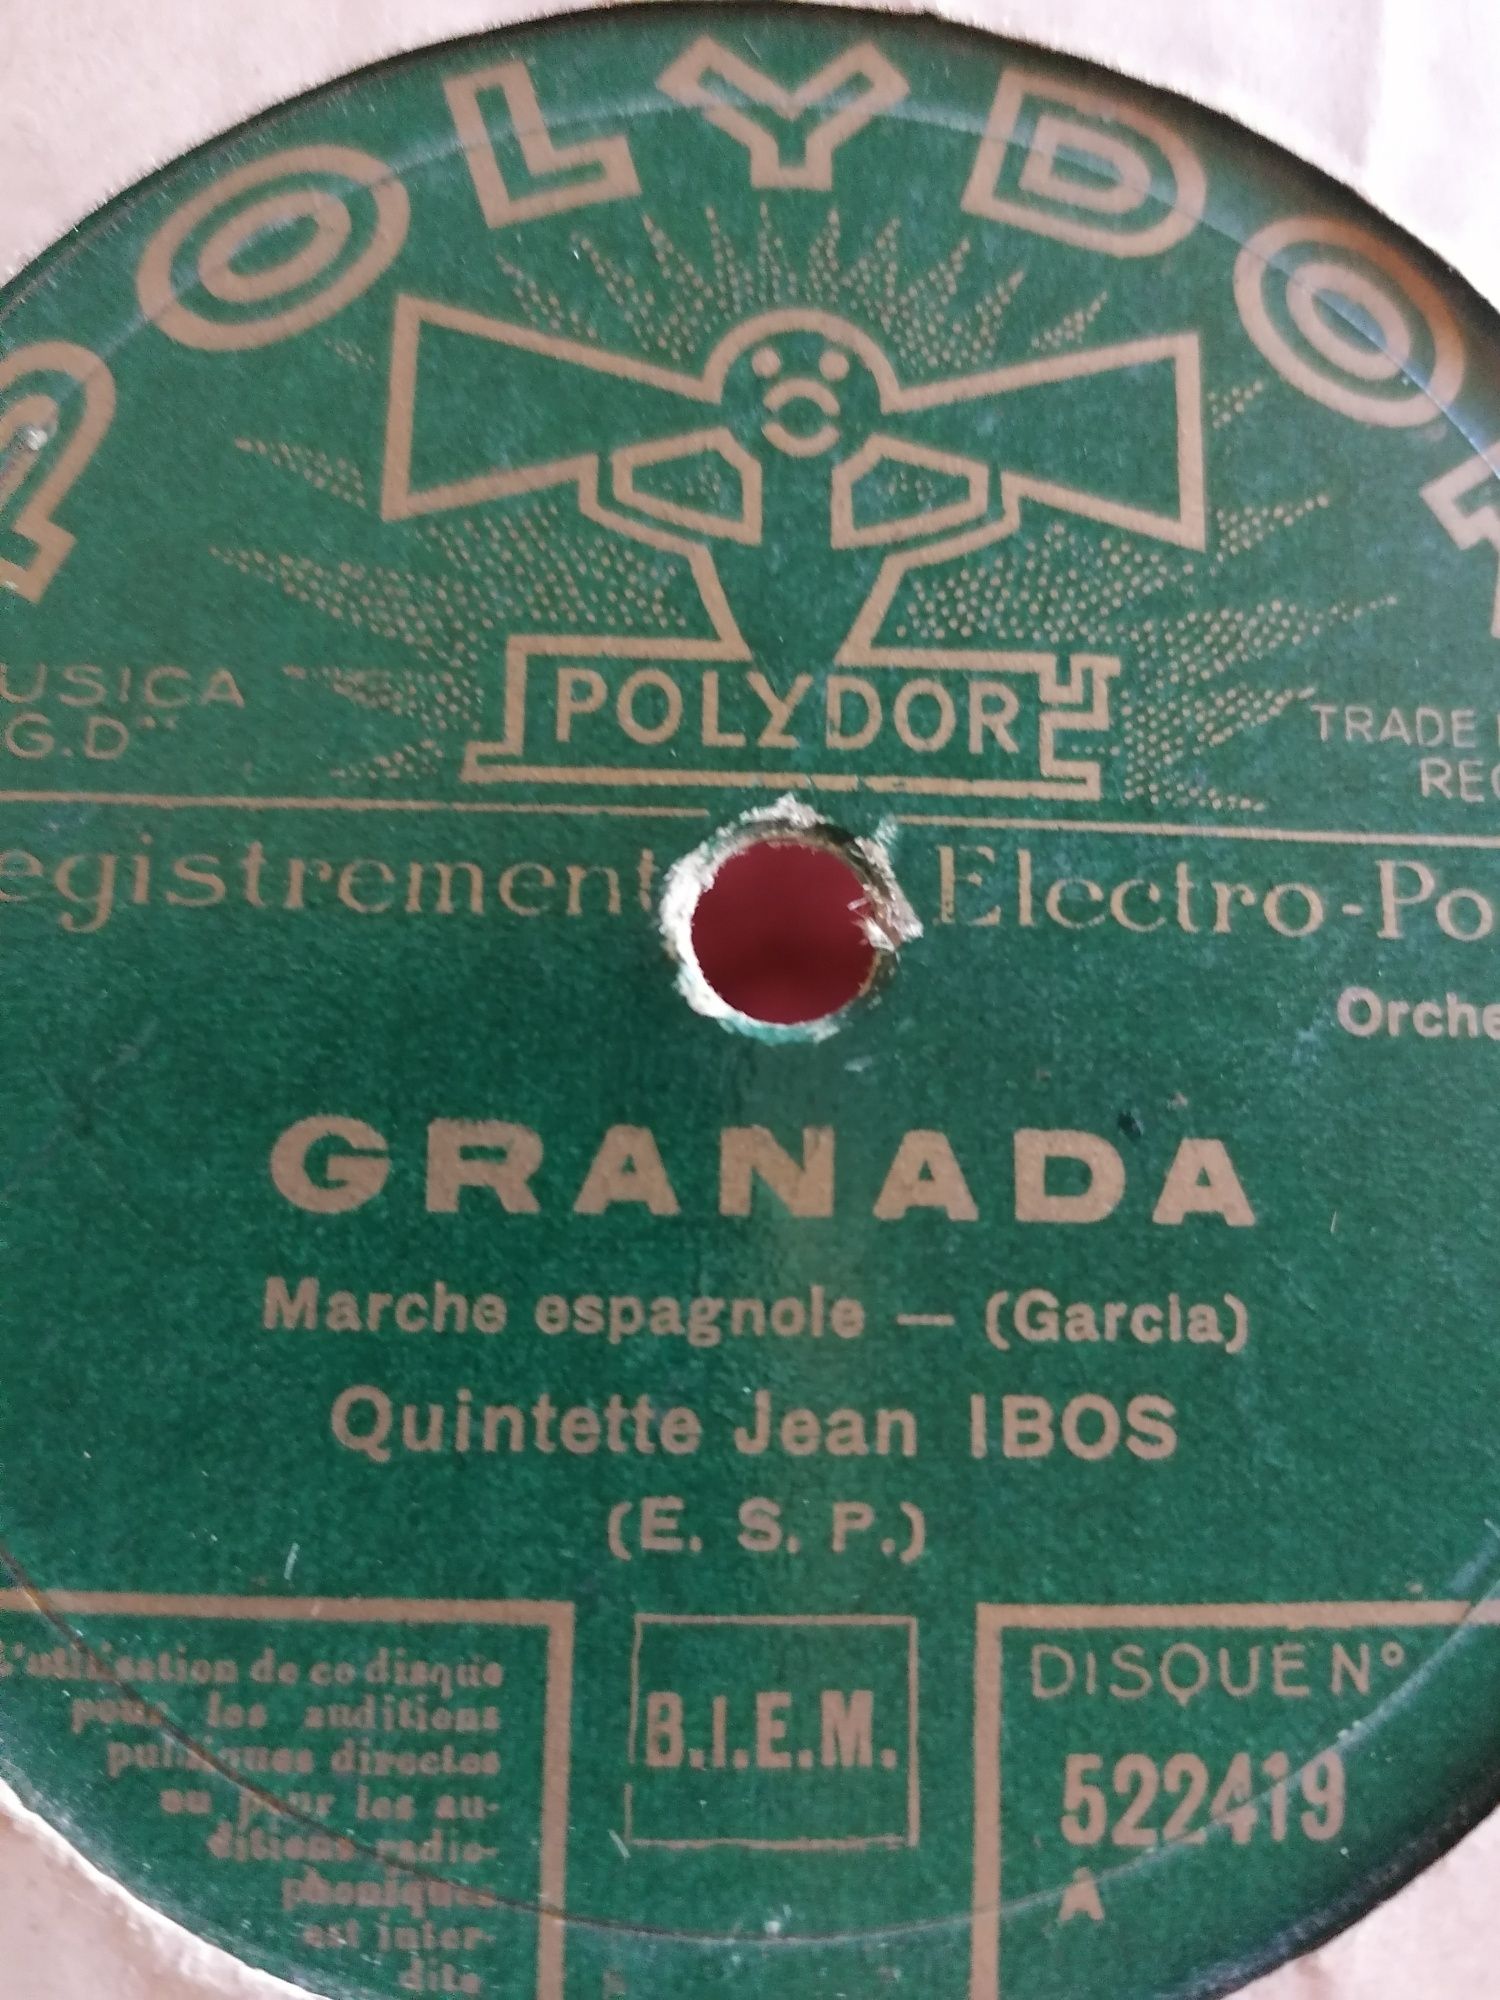 Discos 78 rpm Vintage